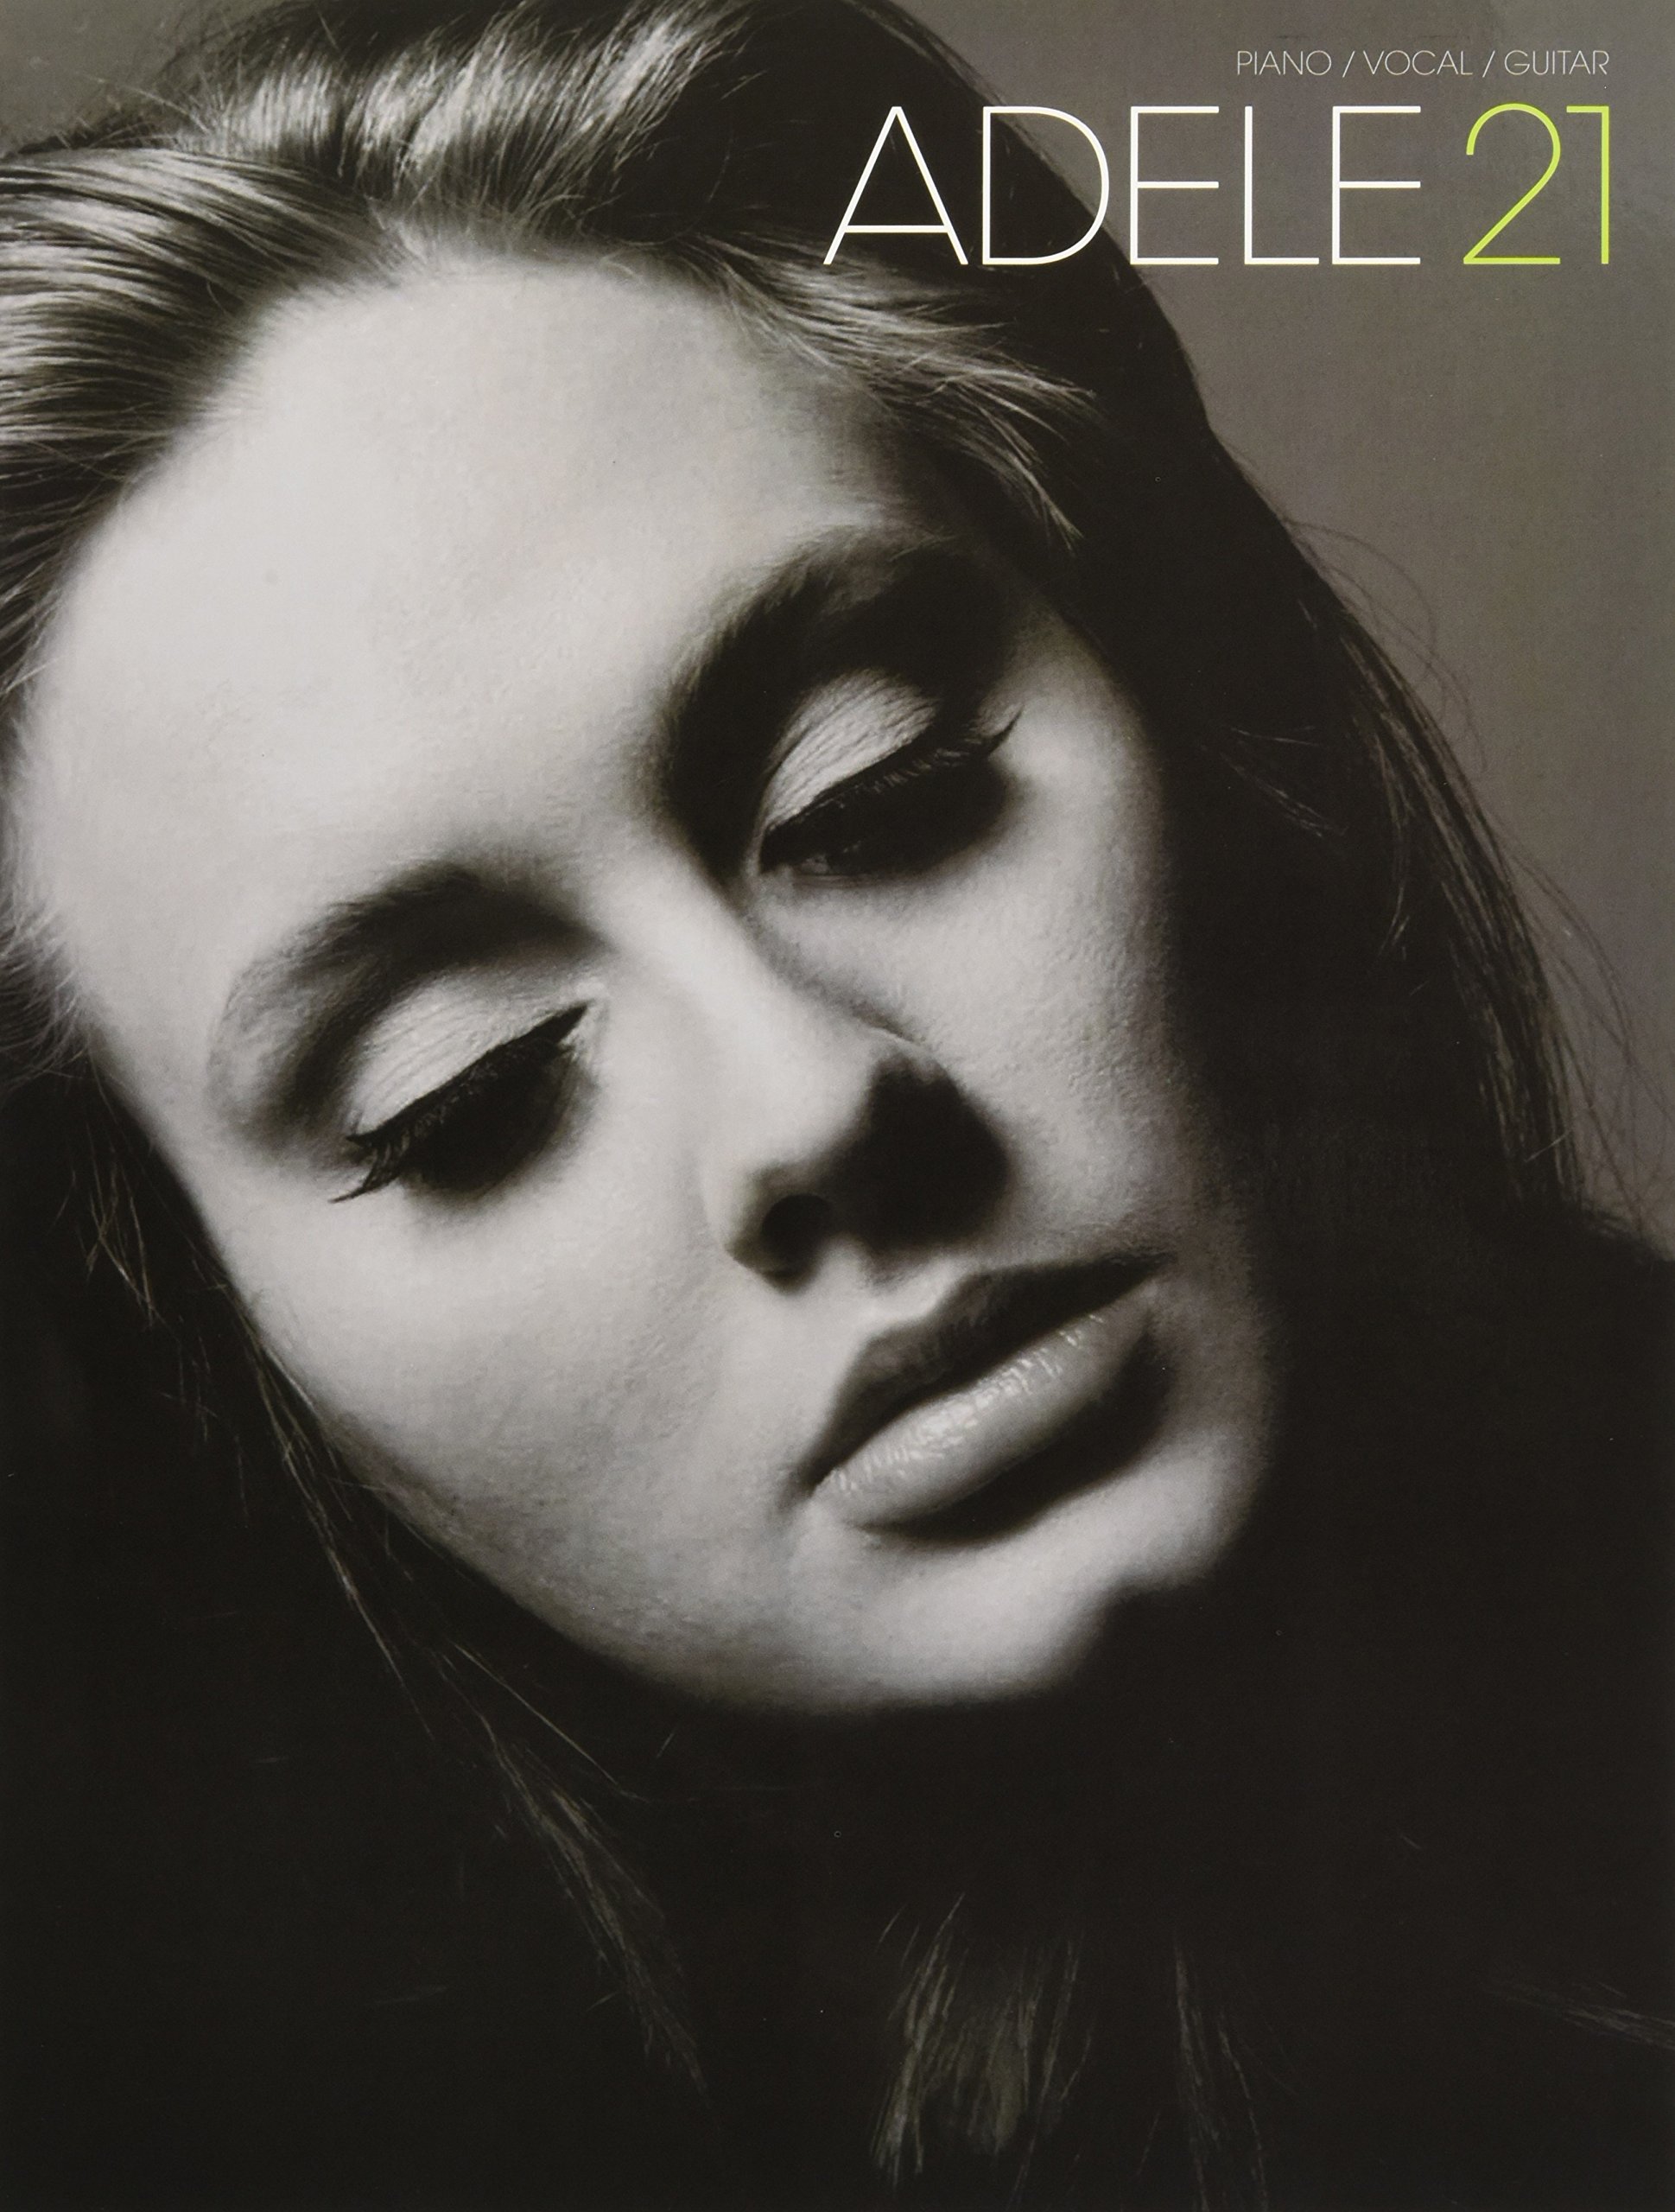 foto da cantora inglesa Adele em seu album 21